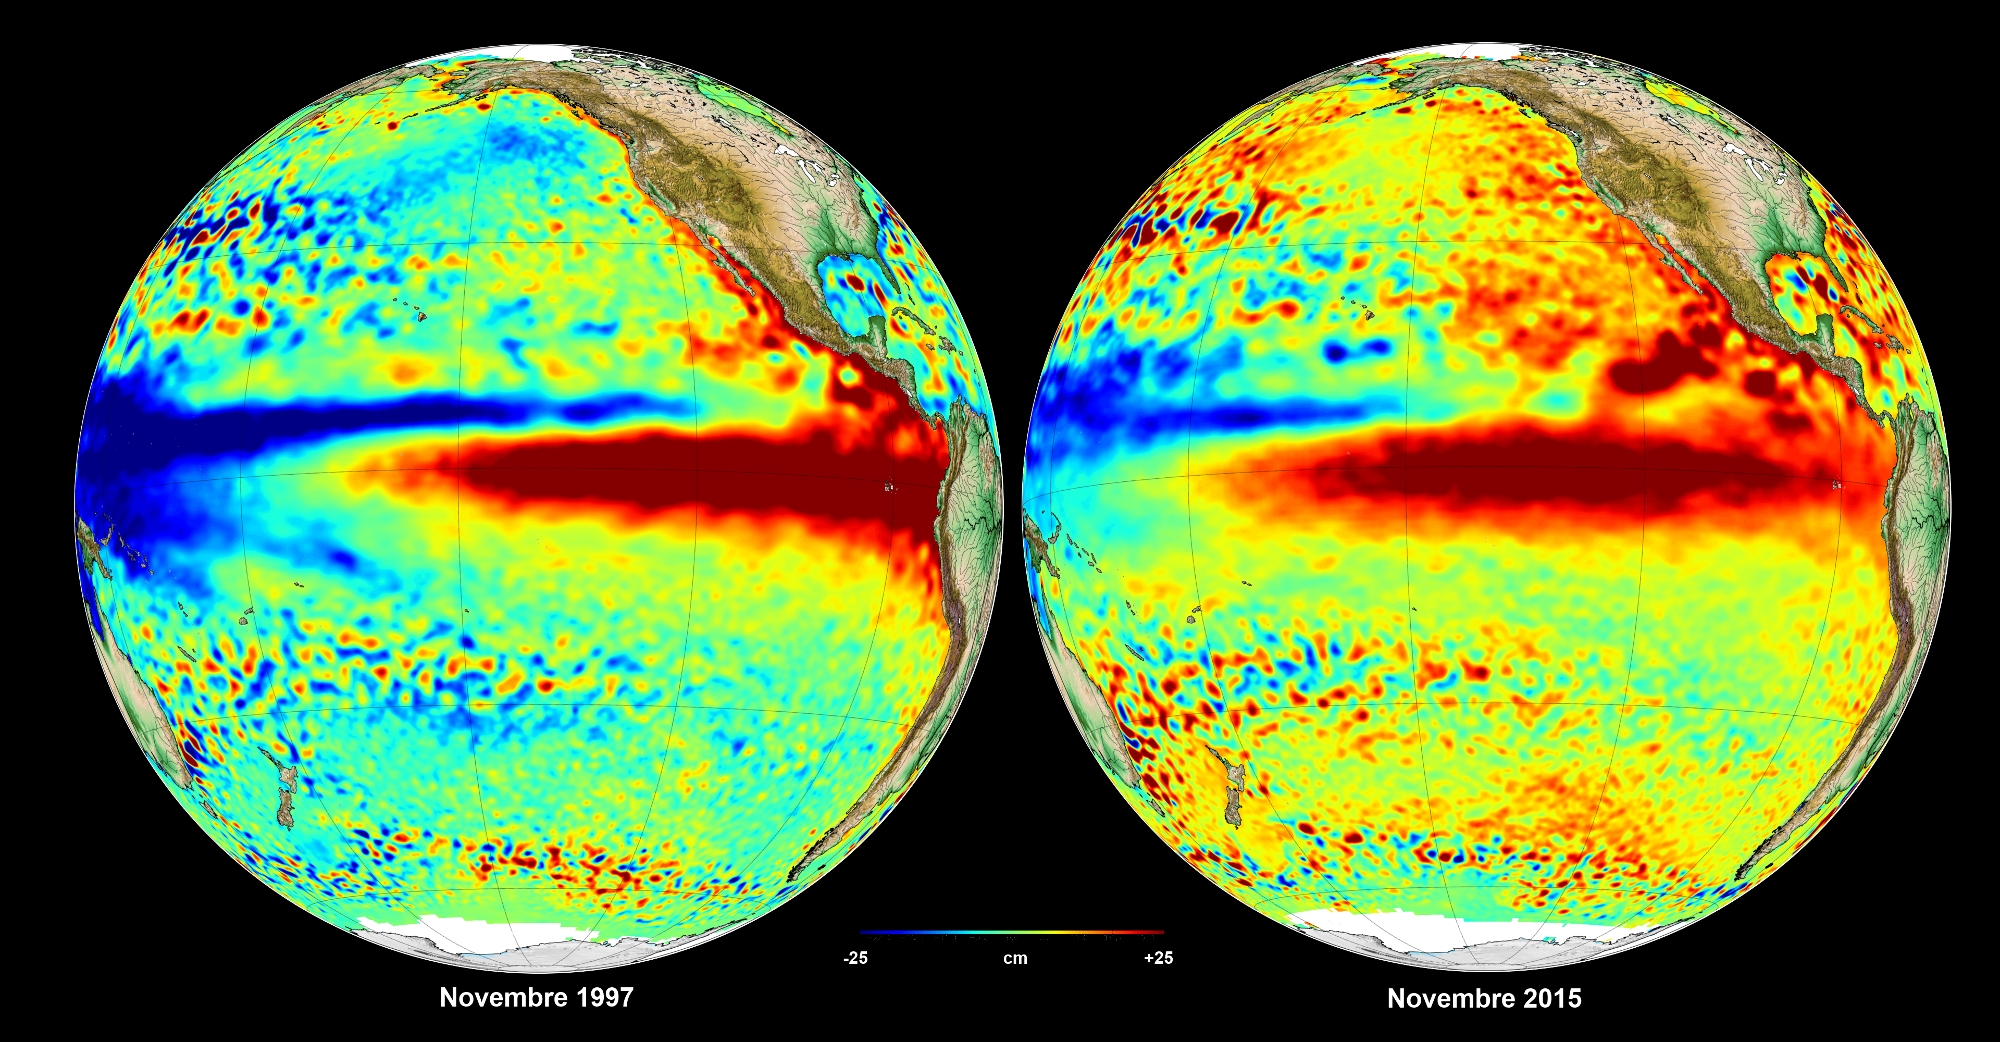 À gauche, El Niño en 1997 (ceinture d’eaux plus chaudes que la moyenne dans le Pacifique). À droite, El Niño en 2015, le plus puissant depuis celui de 1997. © Aviso, Cnes, CLS 2015